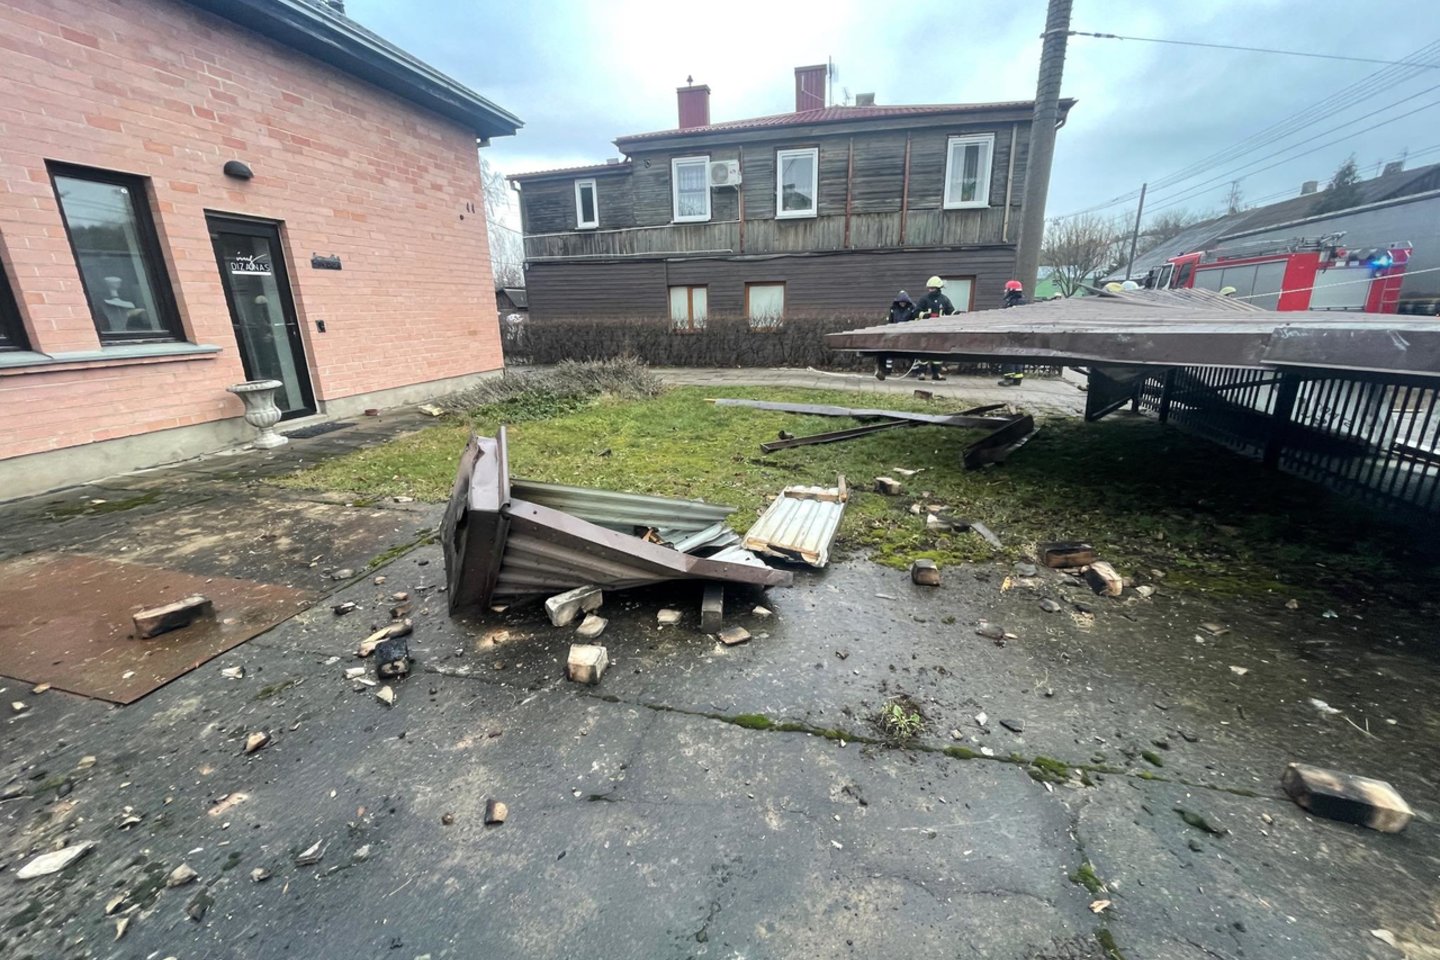  Vaidoto gatvėje namo stogas nukrito ant troleibusų kontaktinio tinklo.<br> G.Bitvinsko nuotr. 